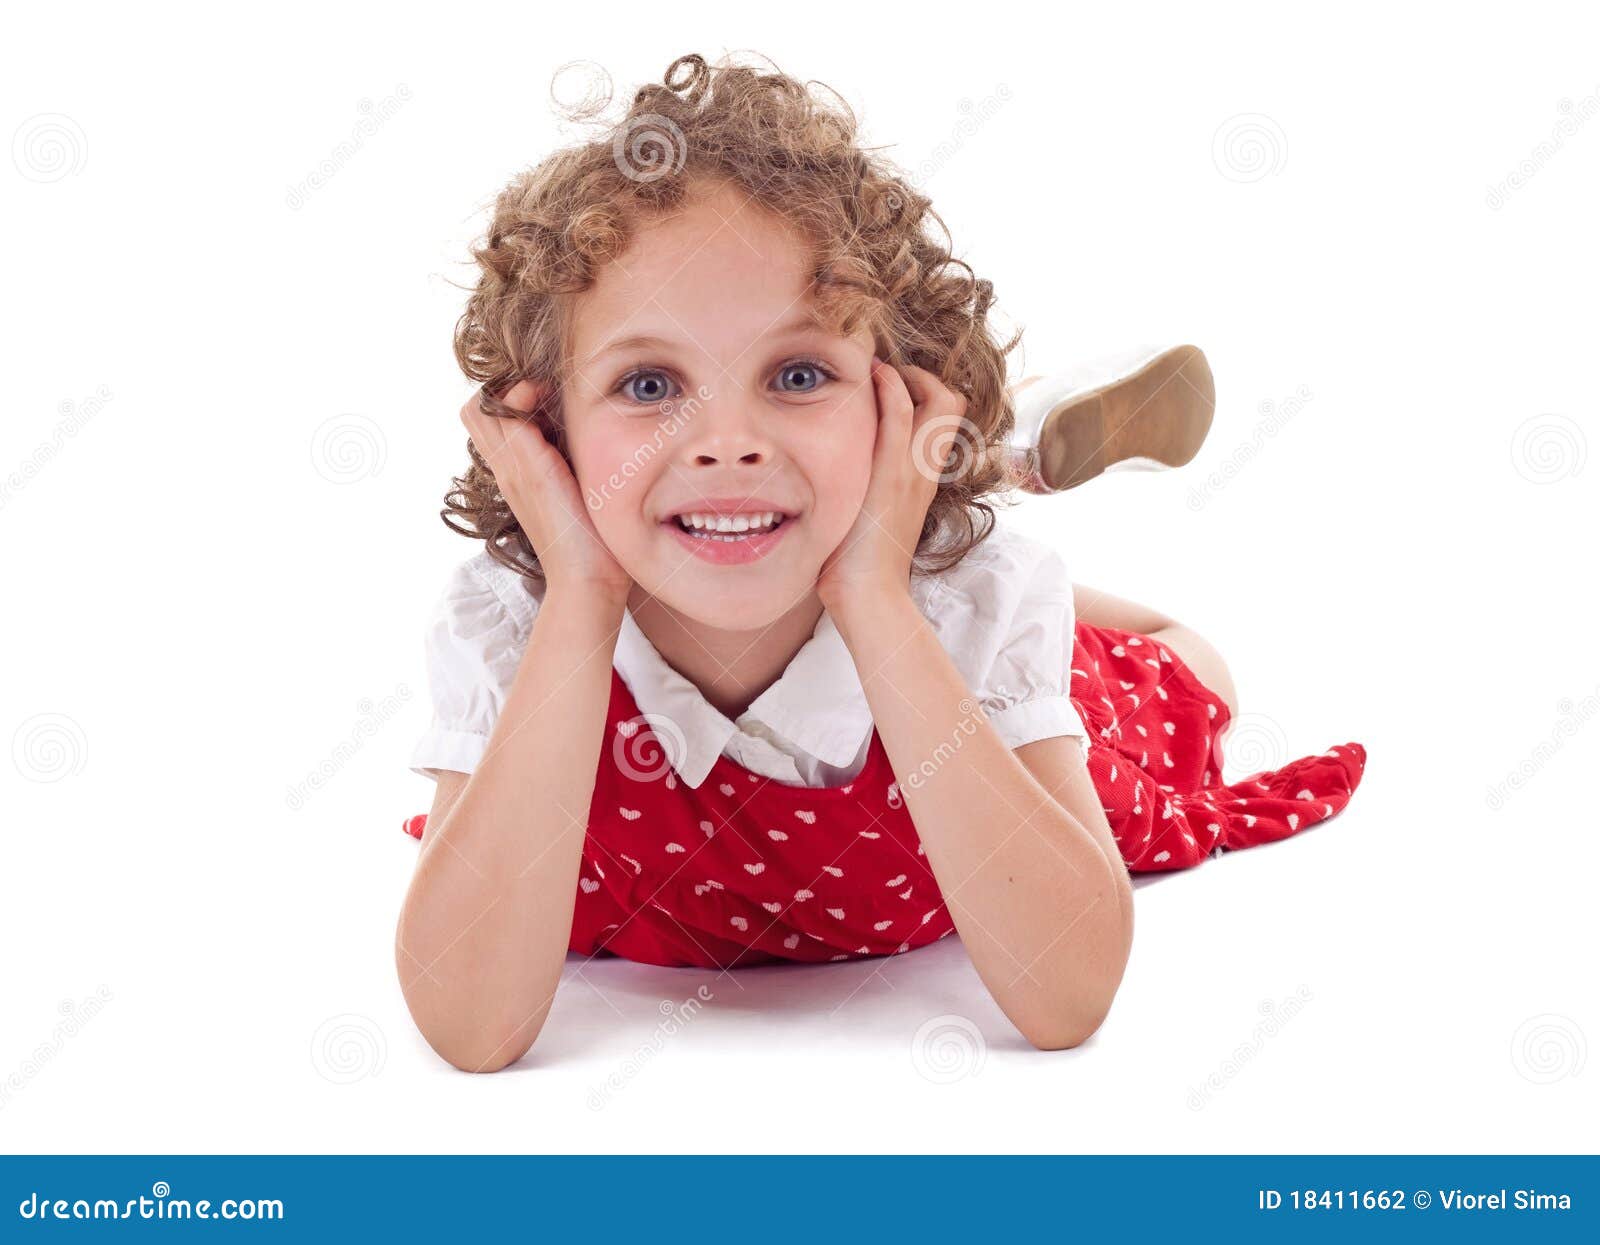 吃冰淇凌的逗人喜爱的小孩女孩 库存图片. 图片 包括有 相当, 幸福, 小孩, 快乐, 生活方式, 微笑 - 41665075